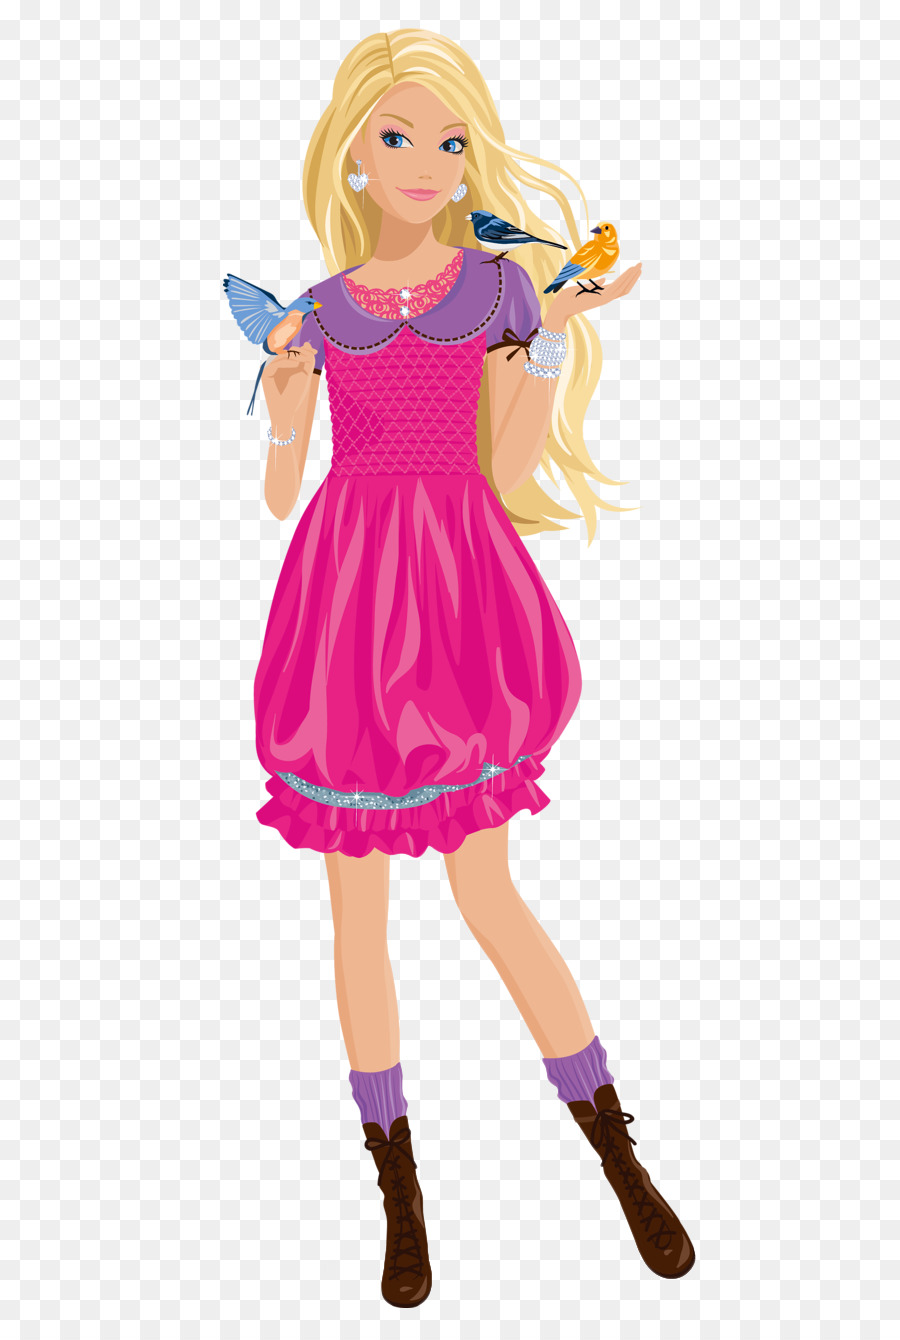 Personagens De Desenhos Animados,garotinha,boneca Barbie,desenho Animado  PNG Imagens Gratuitas Para Download - Lovepik